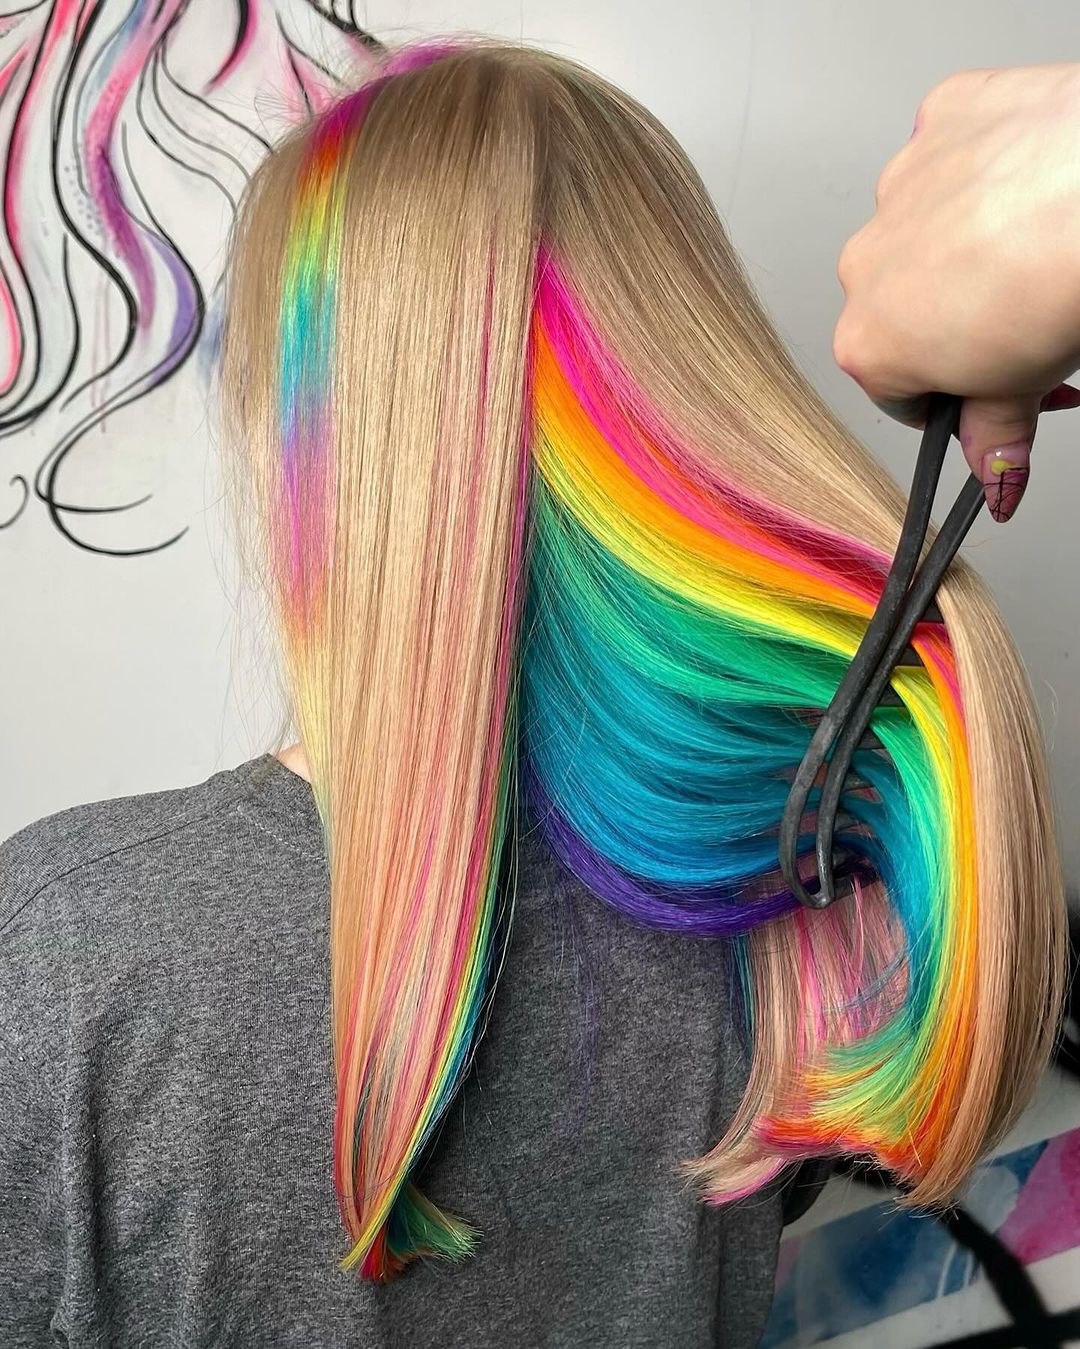 arcobaleno nascosto sui capelli biondi